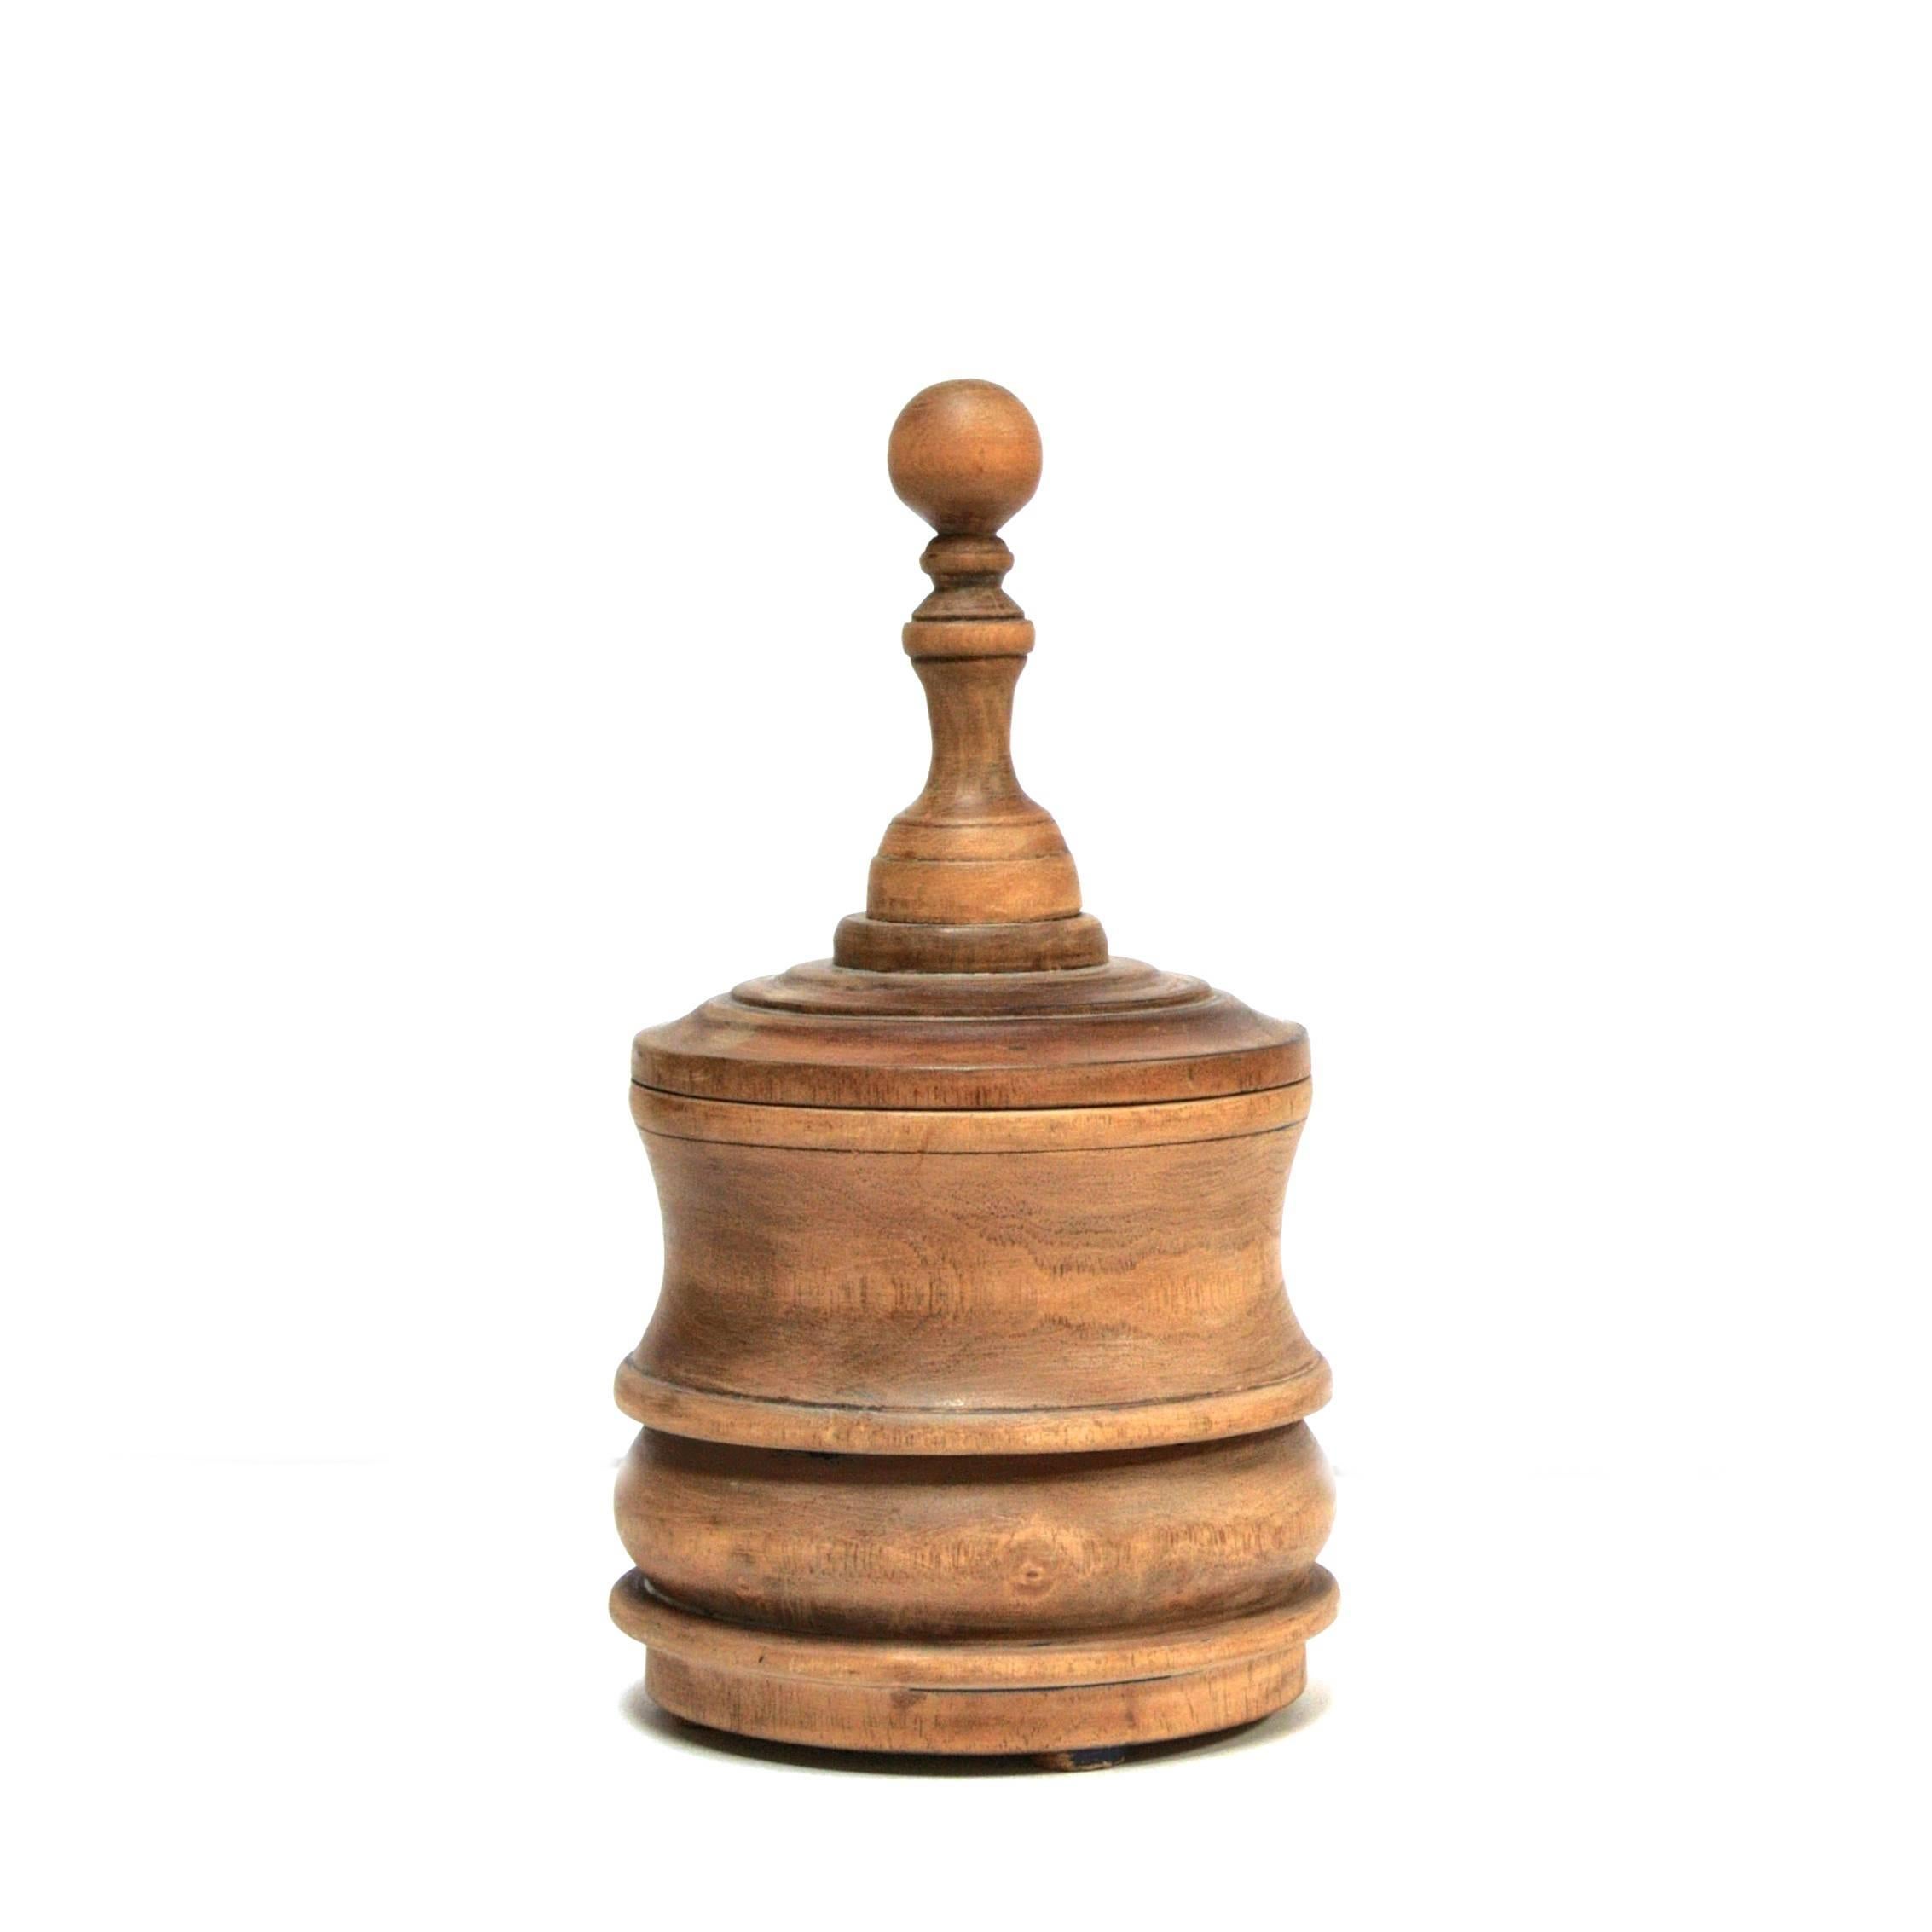 A wooden tobacco jar, Belgium, circa 1920.